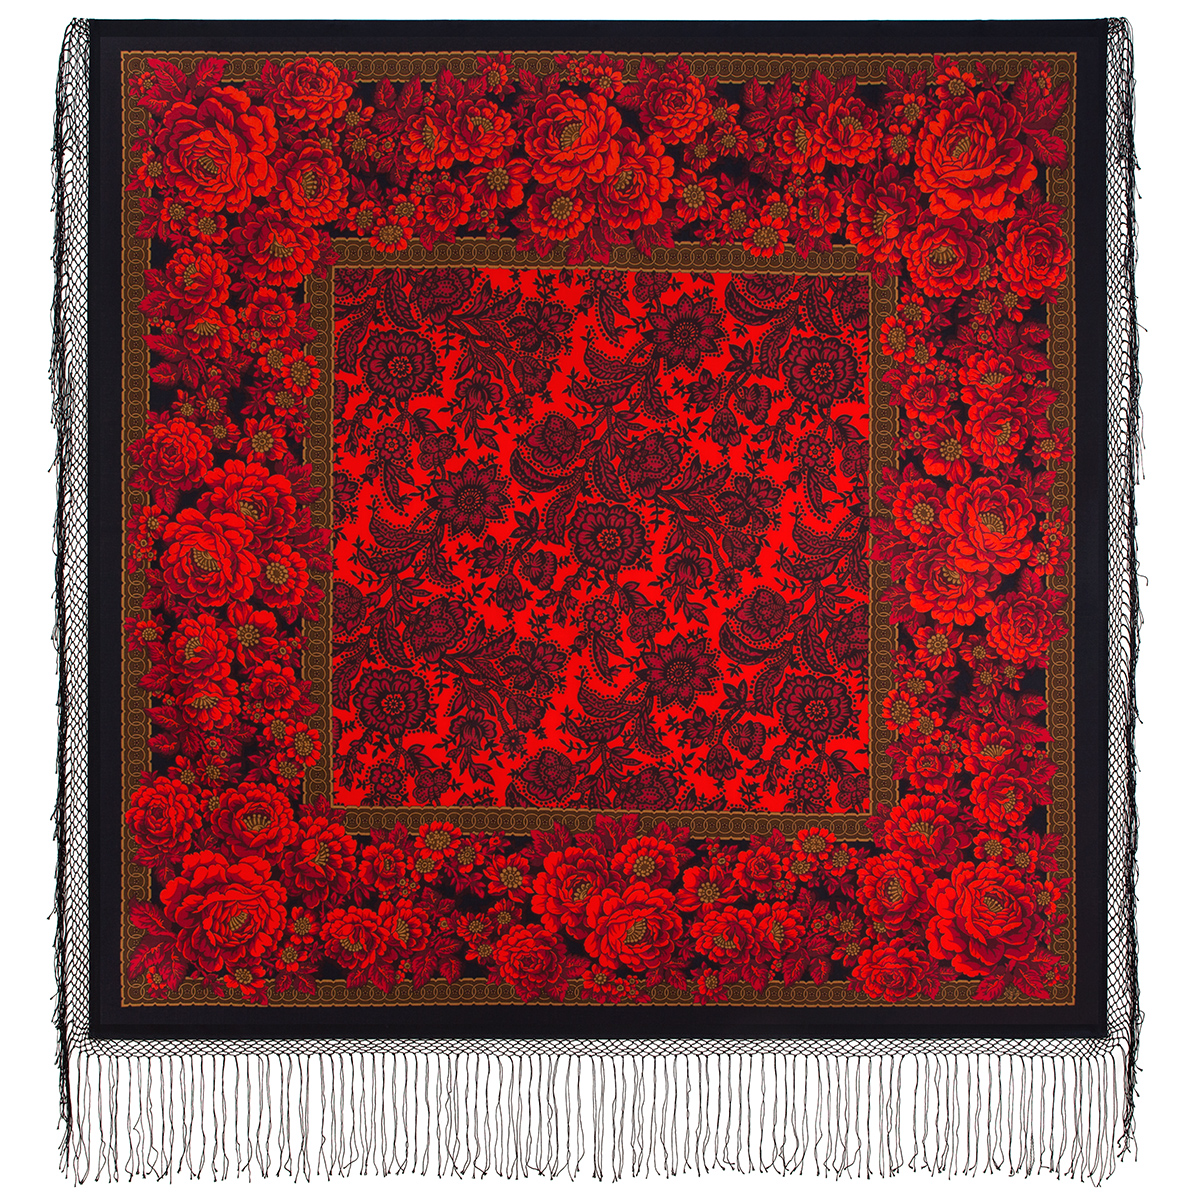 Платок женский Павловопосадский платок 1977 черный/красный, 148х148 см